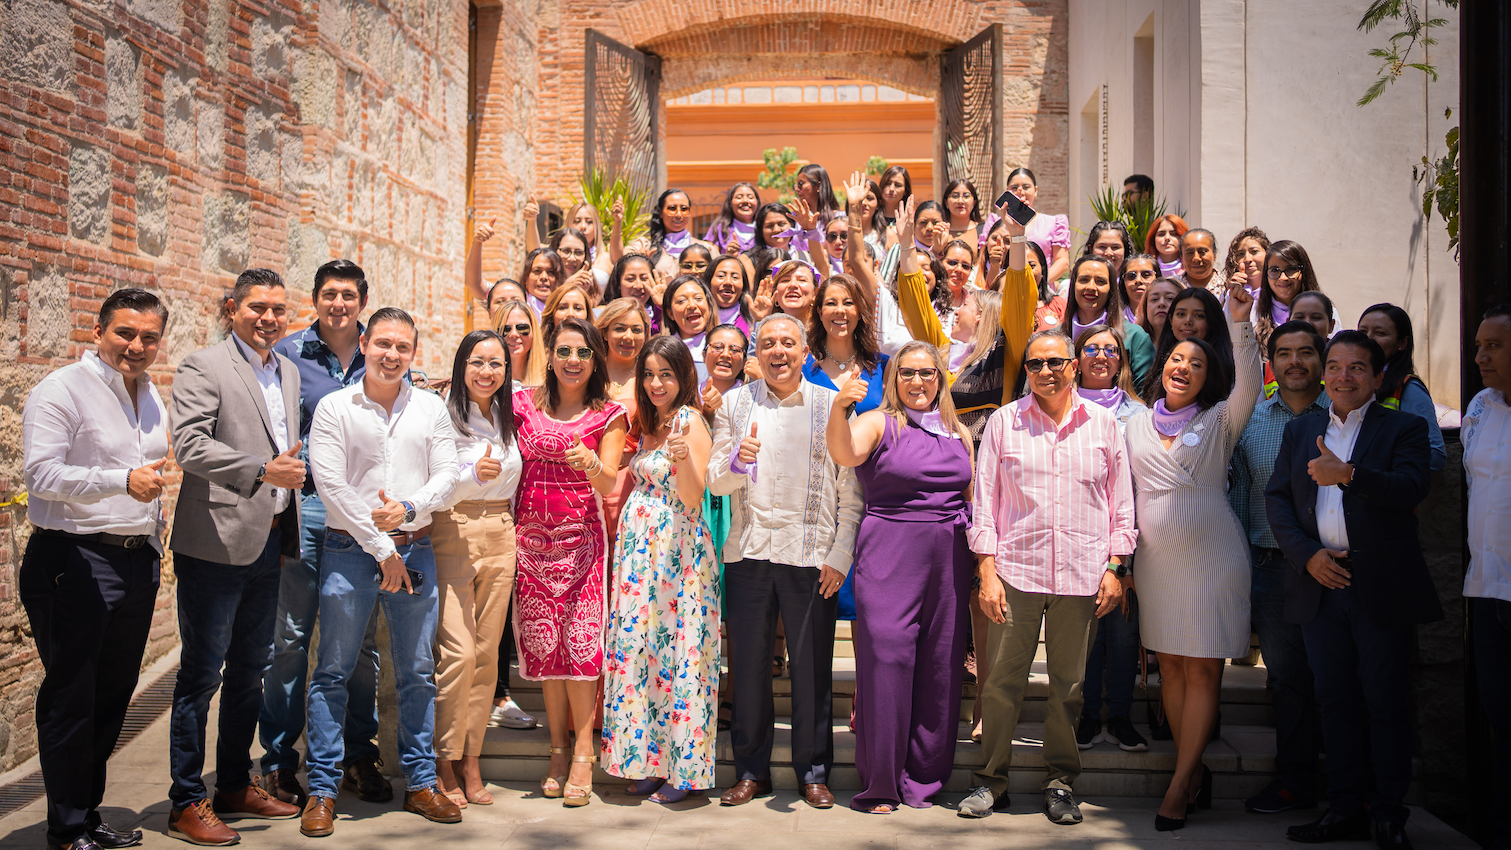 Mujeres mineras de Oaxaca se organizan para promover la equidad e inclusión